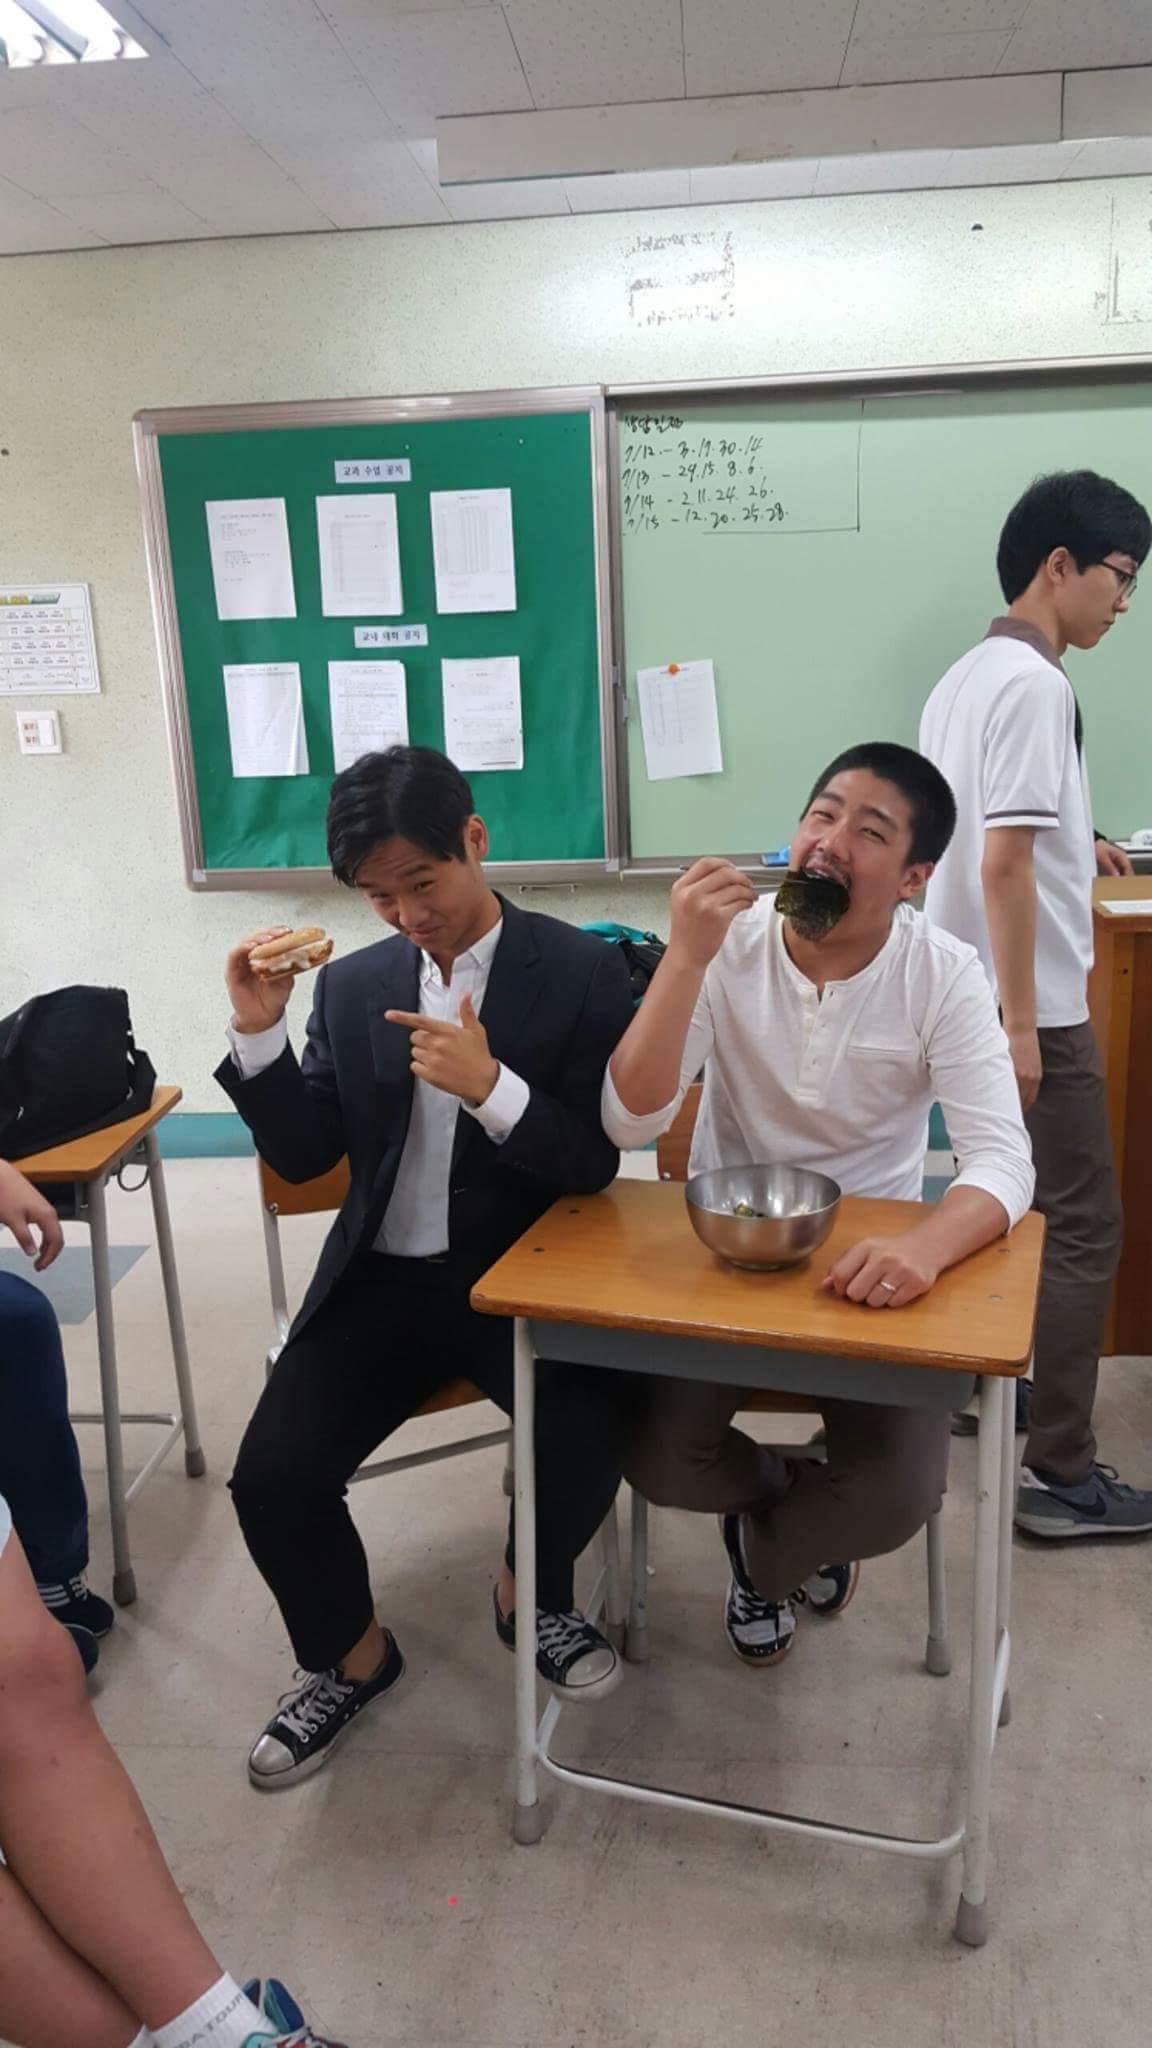 의정부고 졸업사진, 김상중과 하정우의 먹방